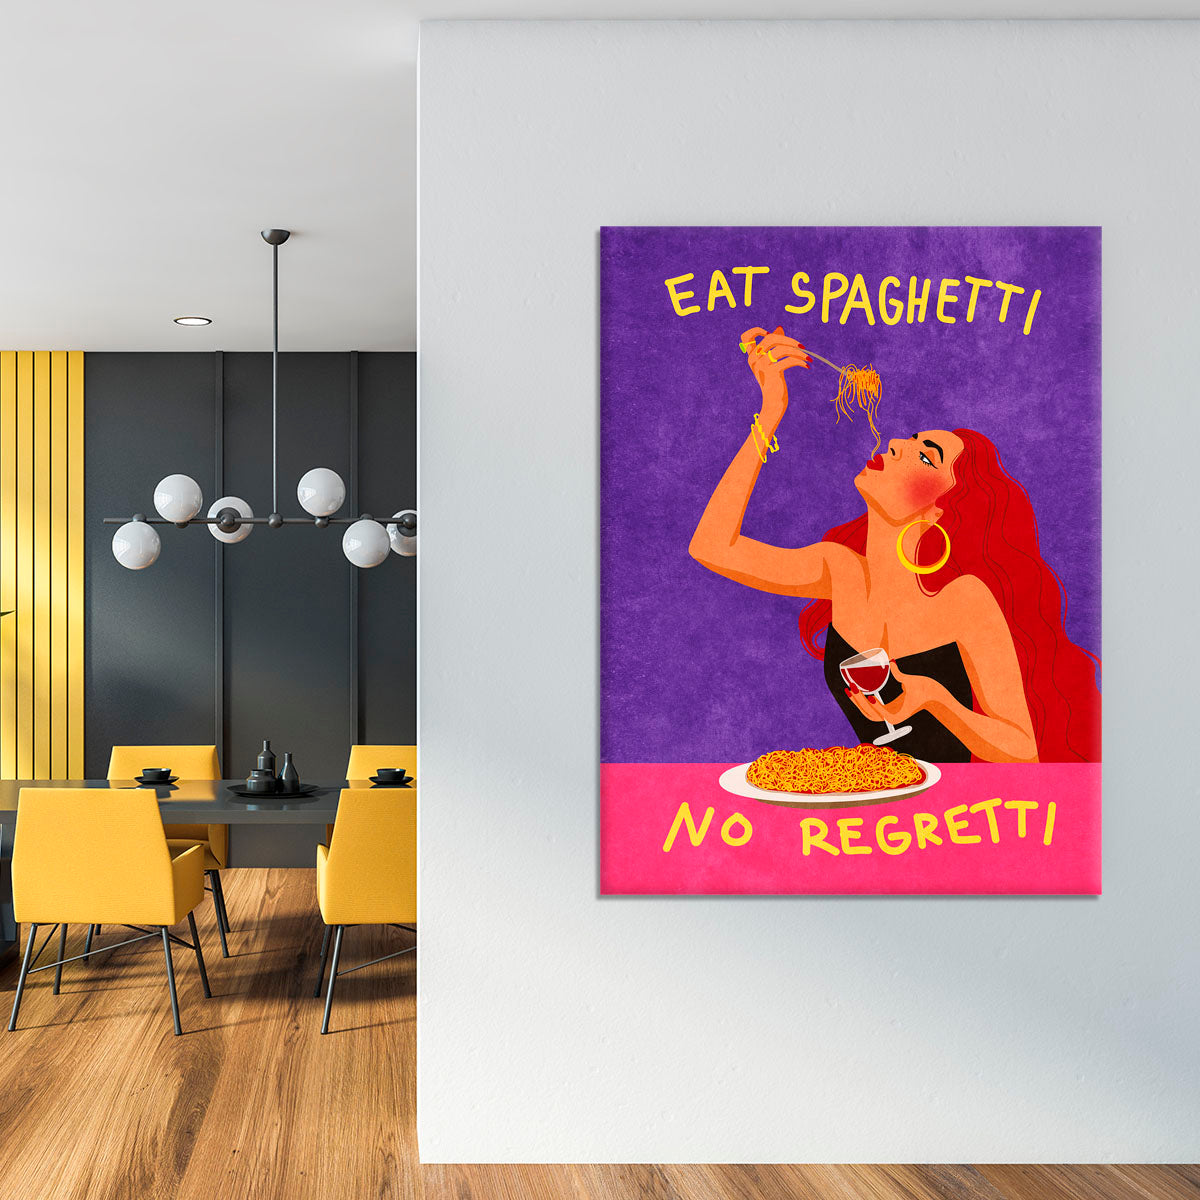 Eat spaghetti no regretti Canvas Print or Poster - Canvas Art Rocks - 4